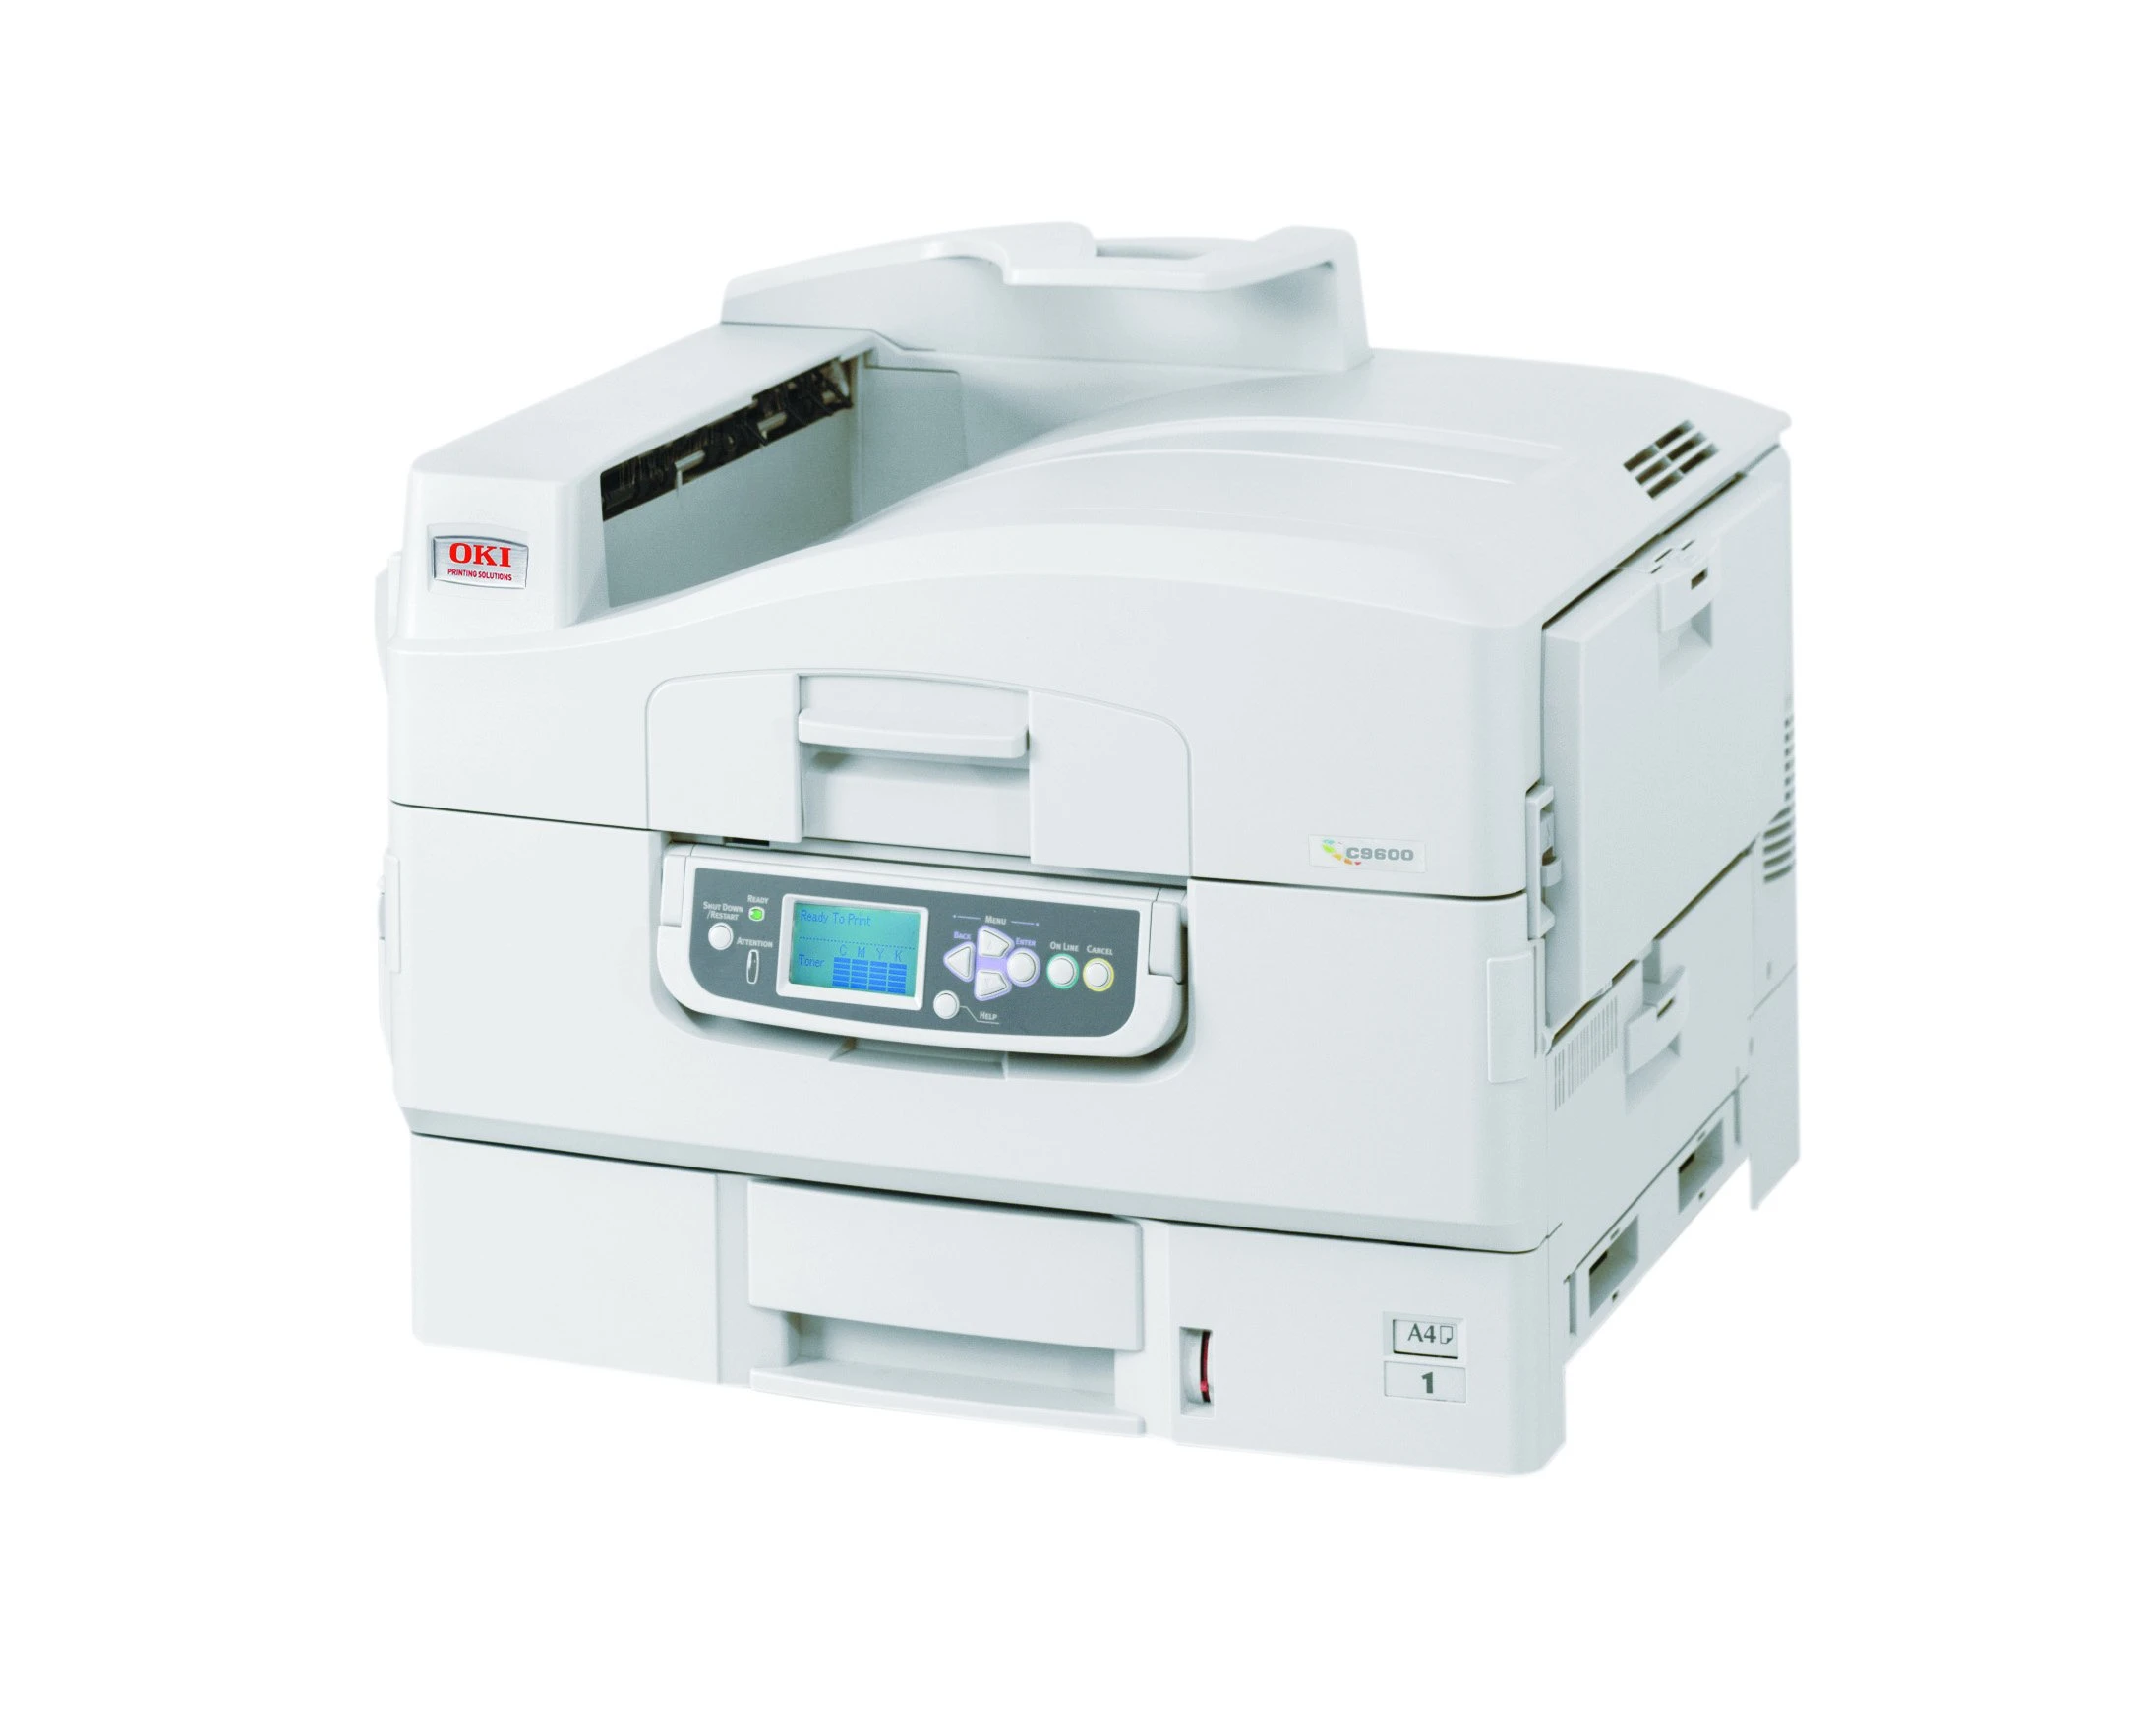 Rabljen tiskalnik OKI C9600 barvni laserski tiskalnik A3 , c9600